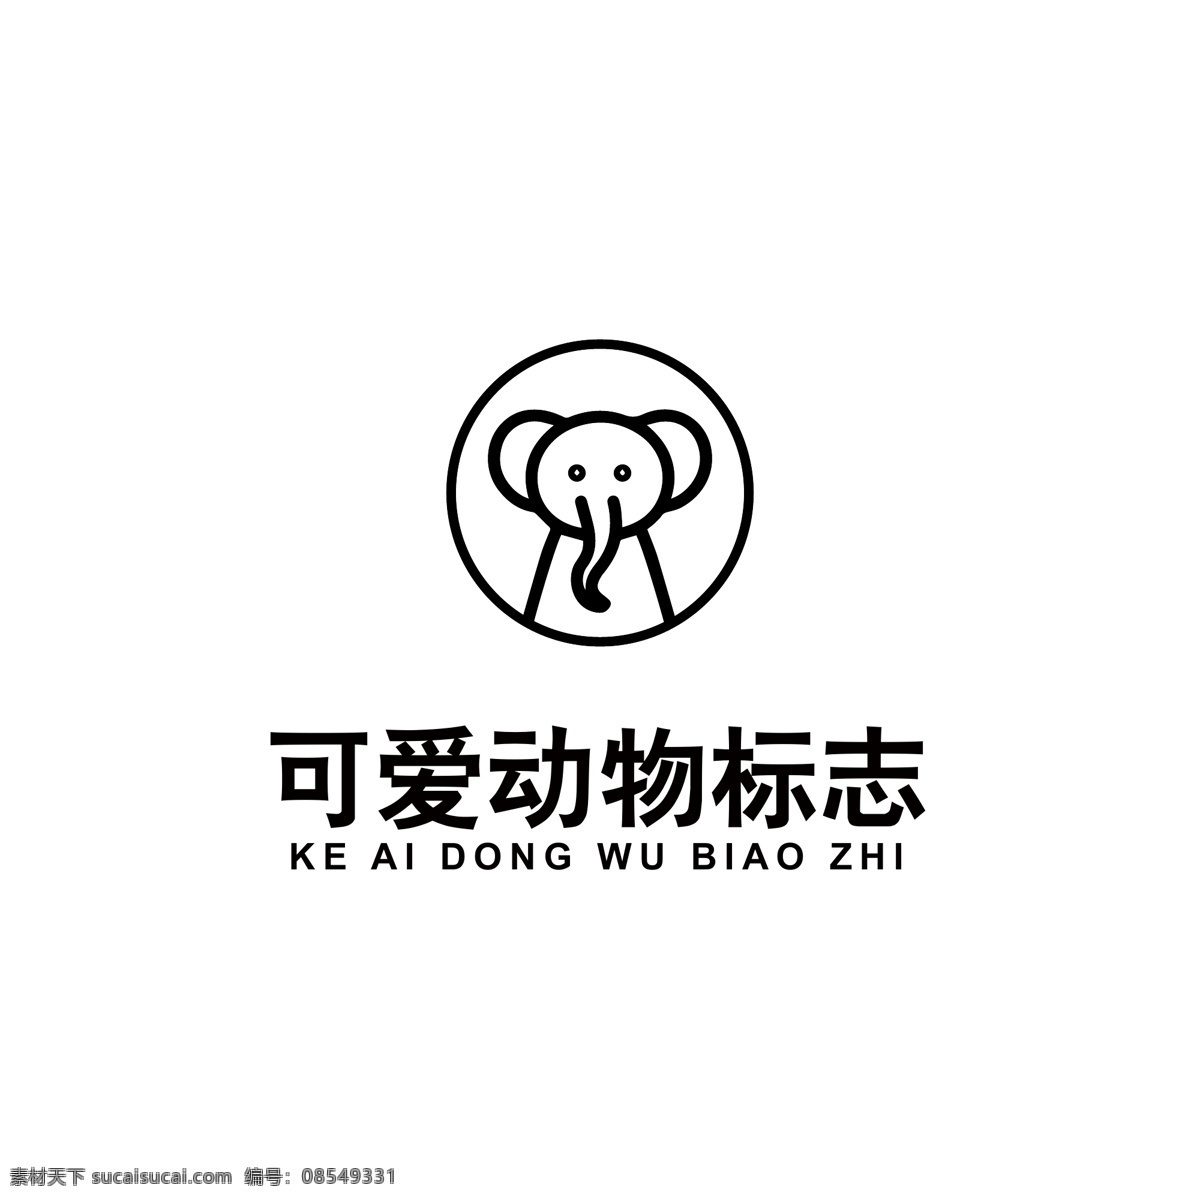 可爱 动物 logo 动物logo 小象 线条logo 品牌logo 母婴logo 象logo logo设计 标识 标志 ai矢量